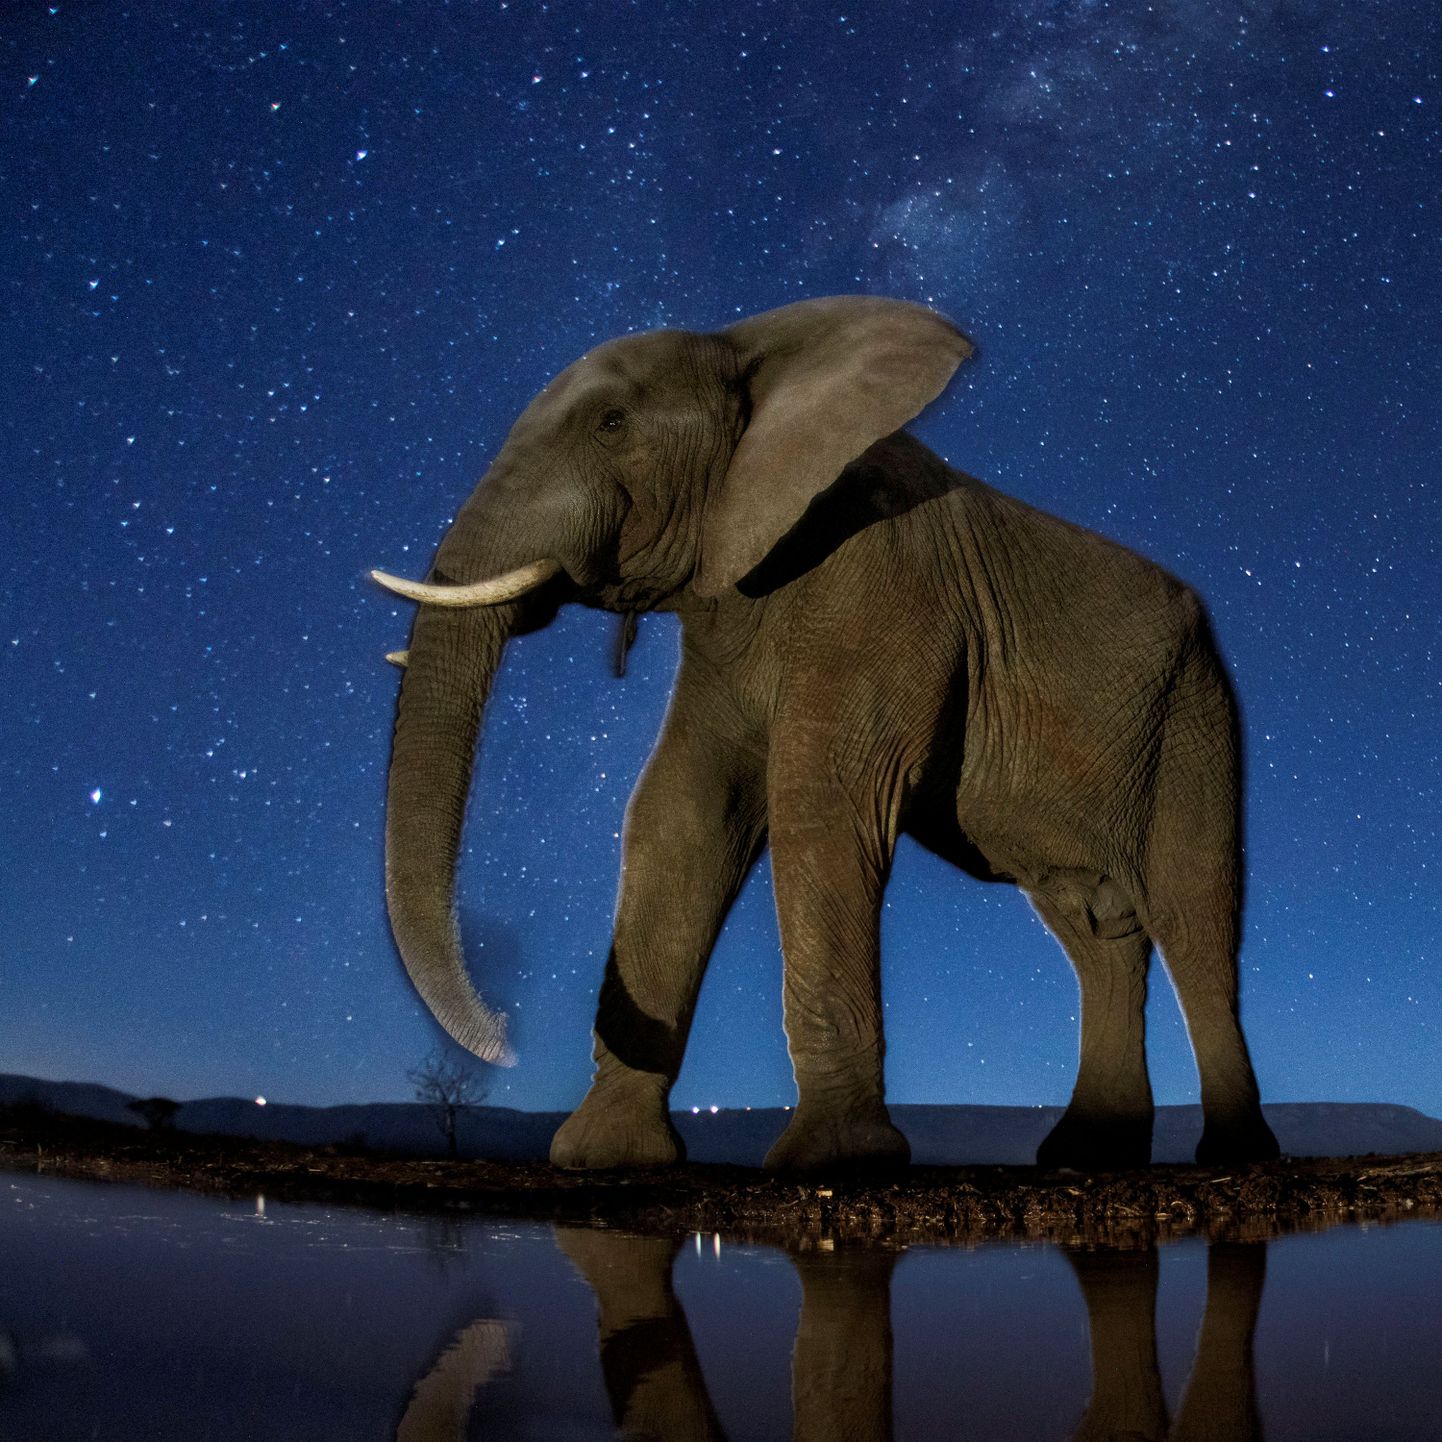 Sel nädalal avalikustati aasta parimad pressifotod ja fotograaf Bence Mate'i pilt Aafrika elevandist tähistaeva all oli üks neist.